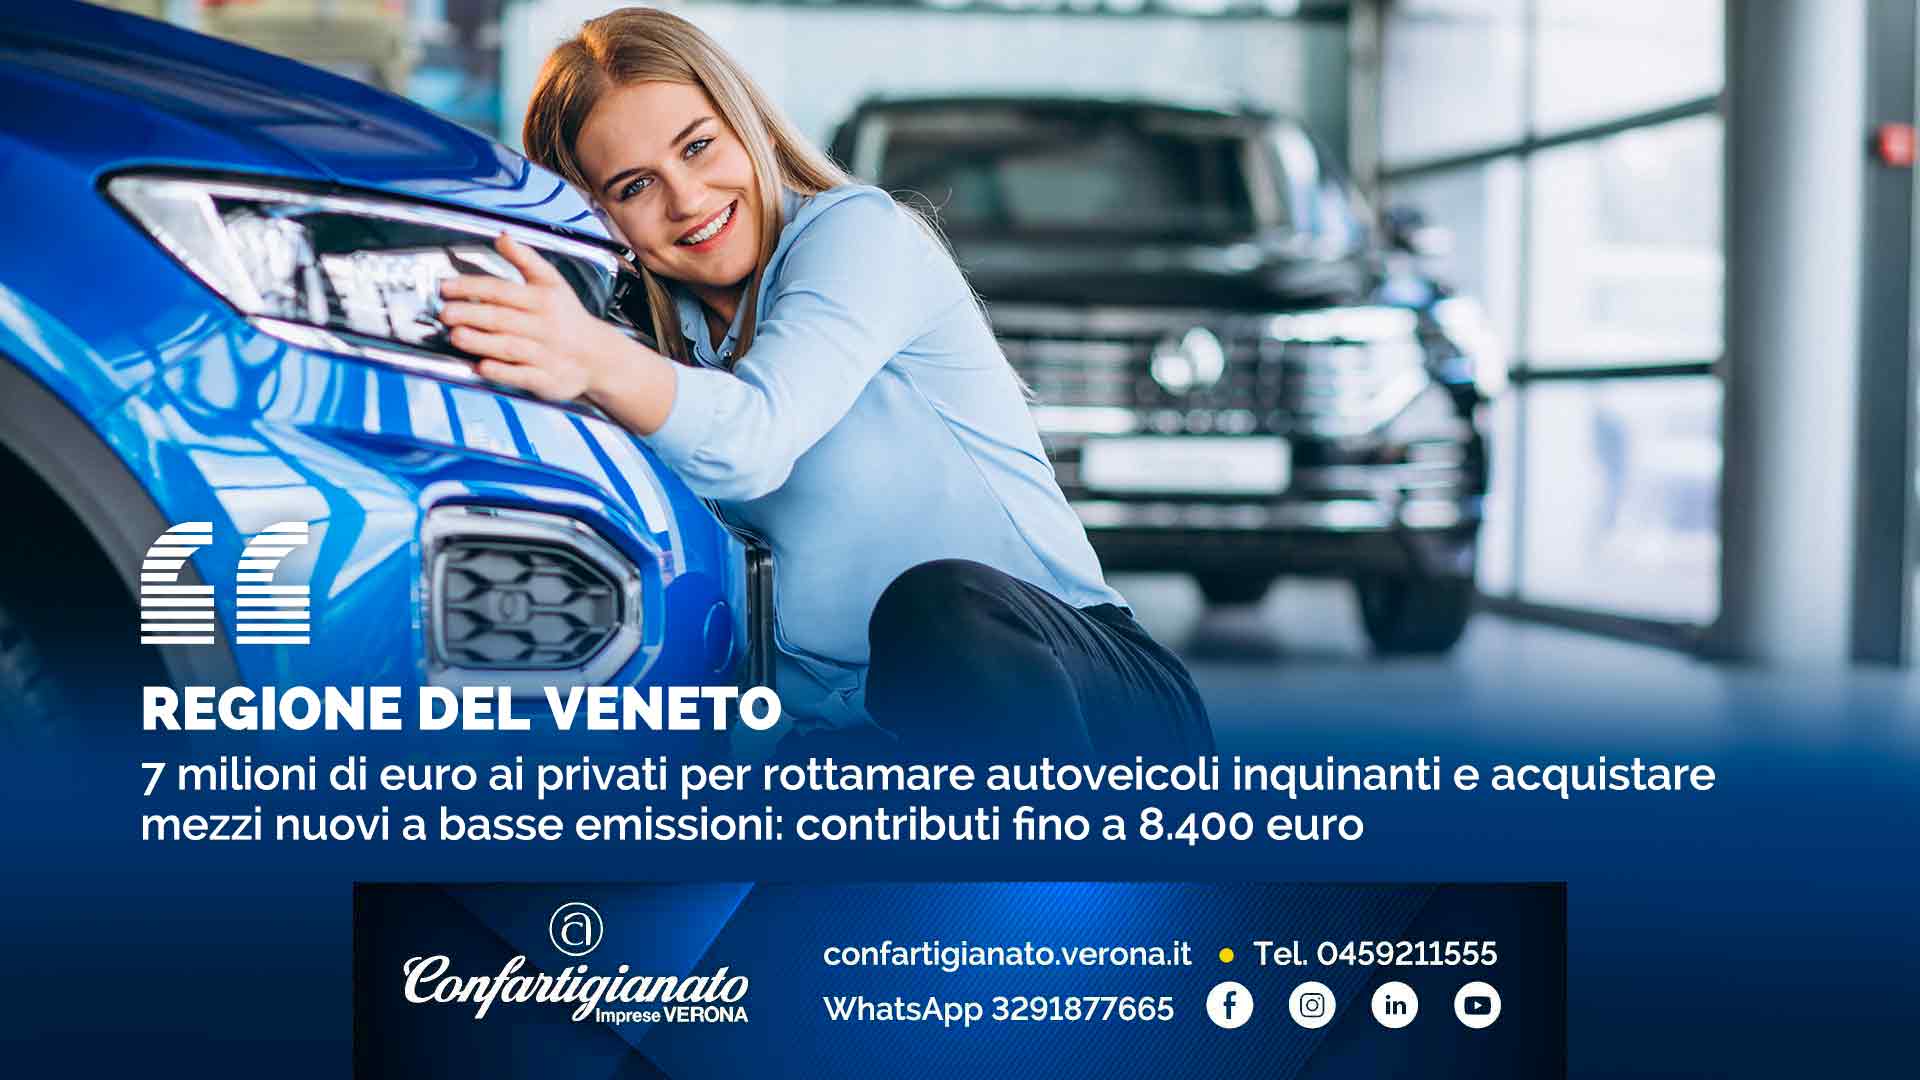 REGIONE DEL VENETO – 7 milioni di euro ai privati per rottamare autoveicoli inquinanti e acquistare mezzi nuovi a basse emissioni: contributi fino a 8.400 euro